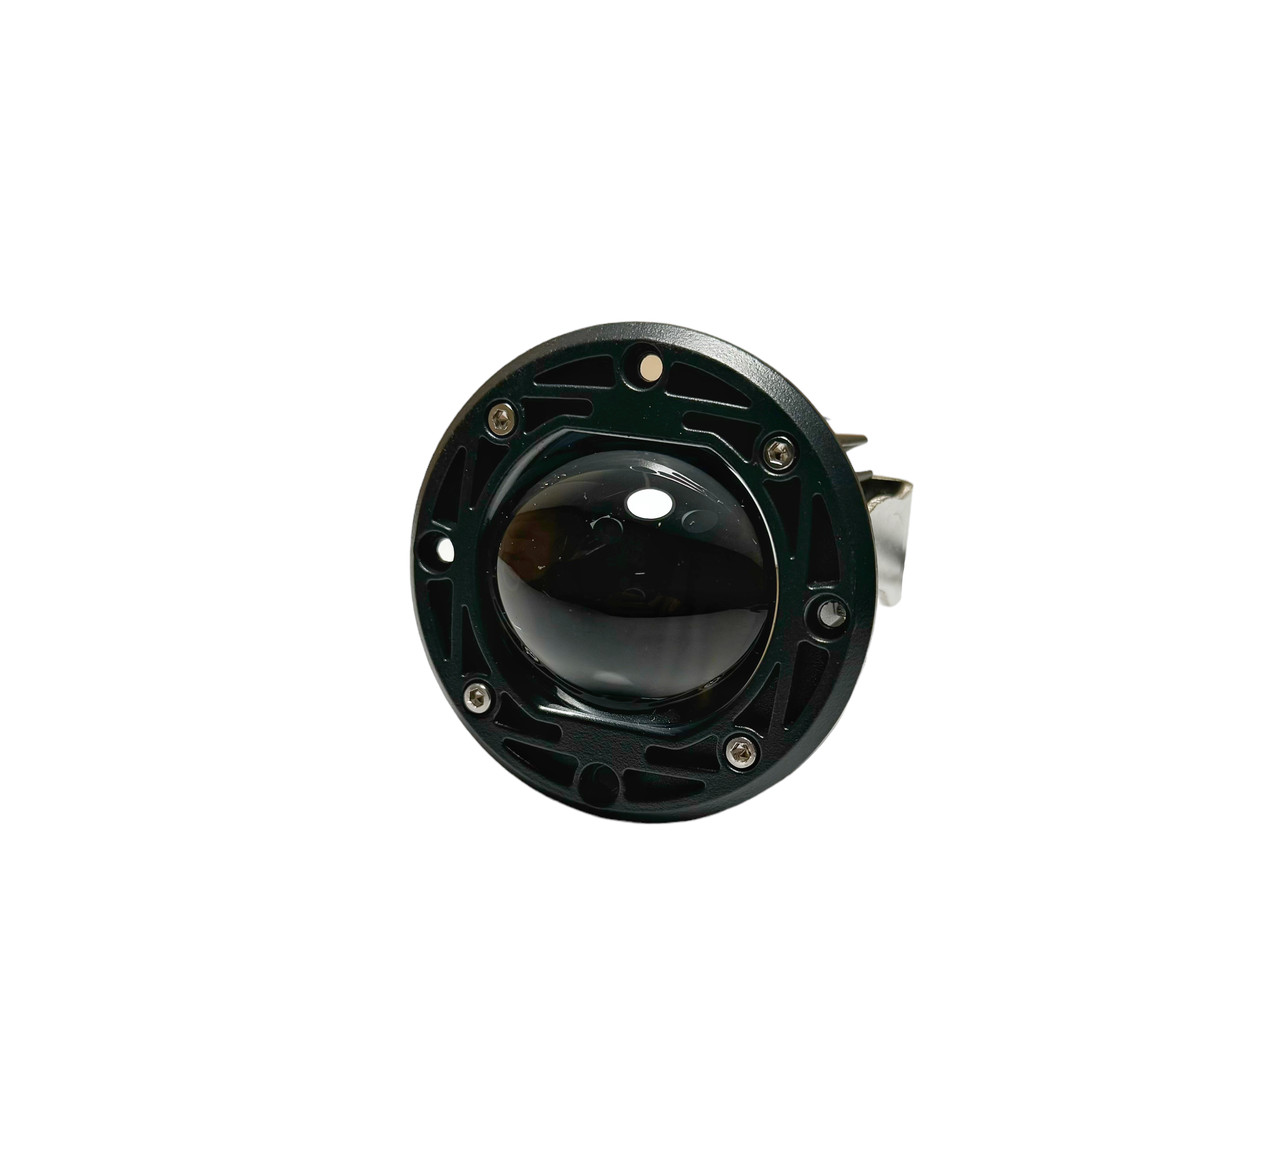 LED фара 15W кругла СТГ 2 режими - ближній/дальній